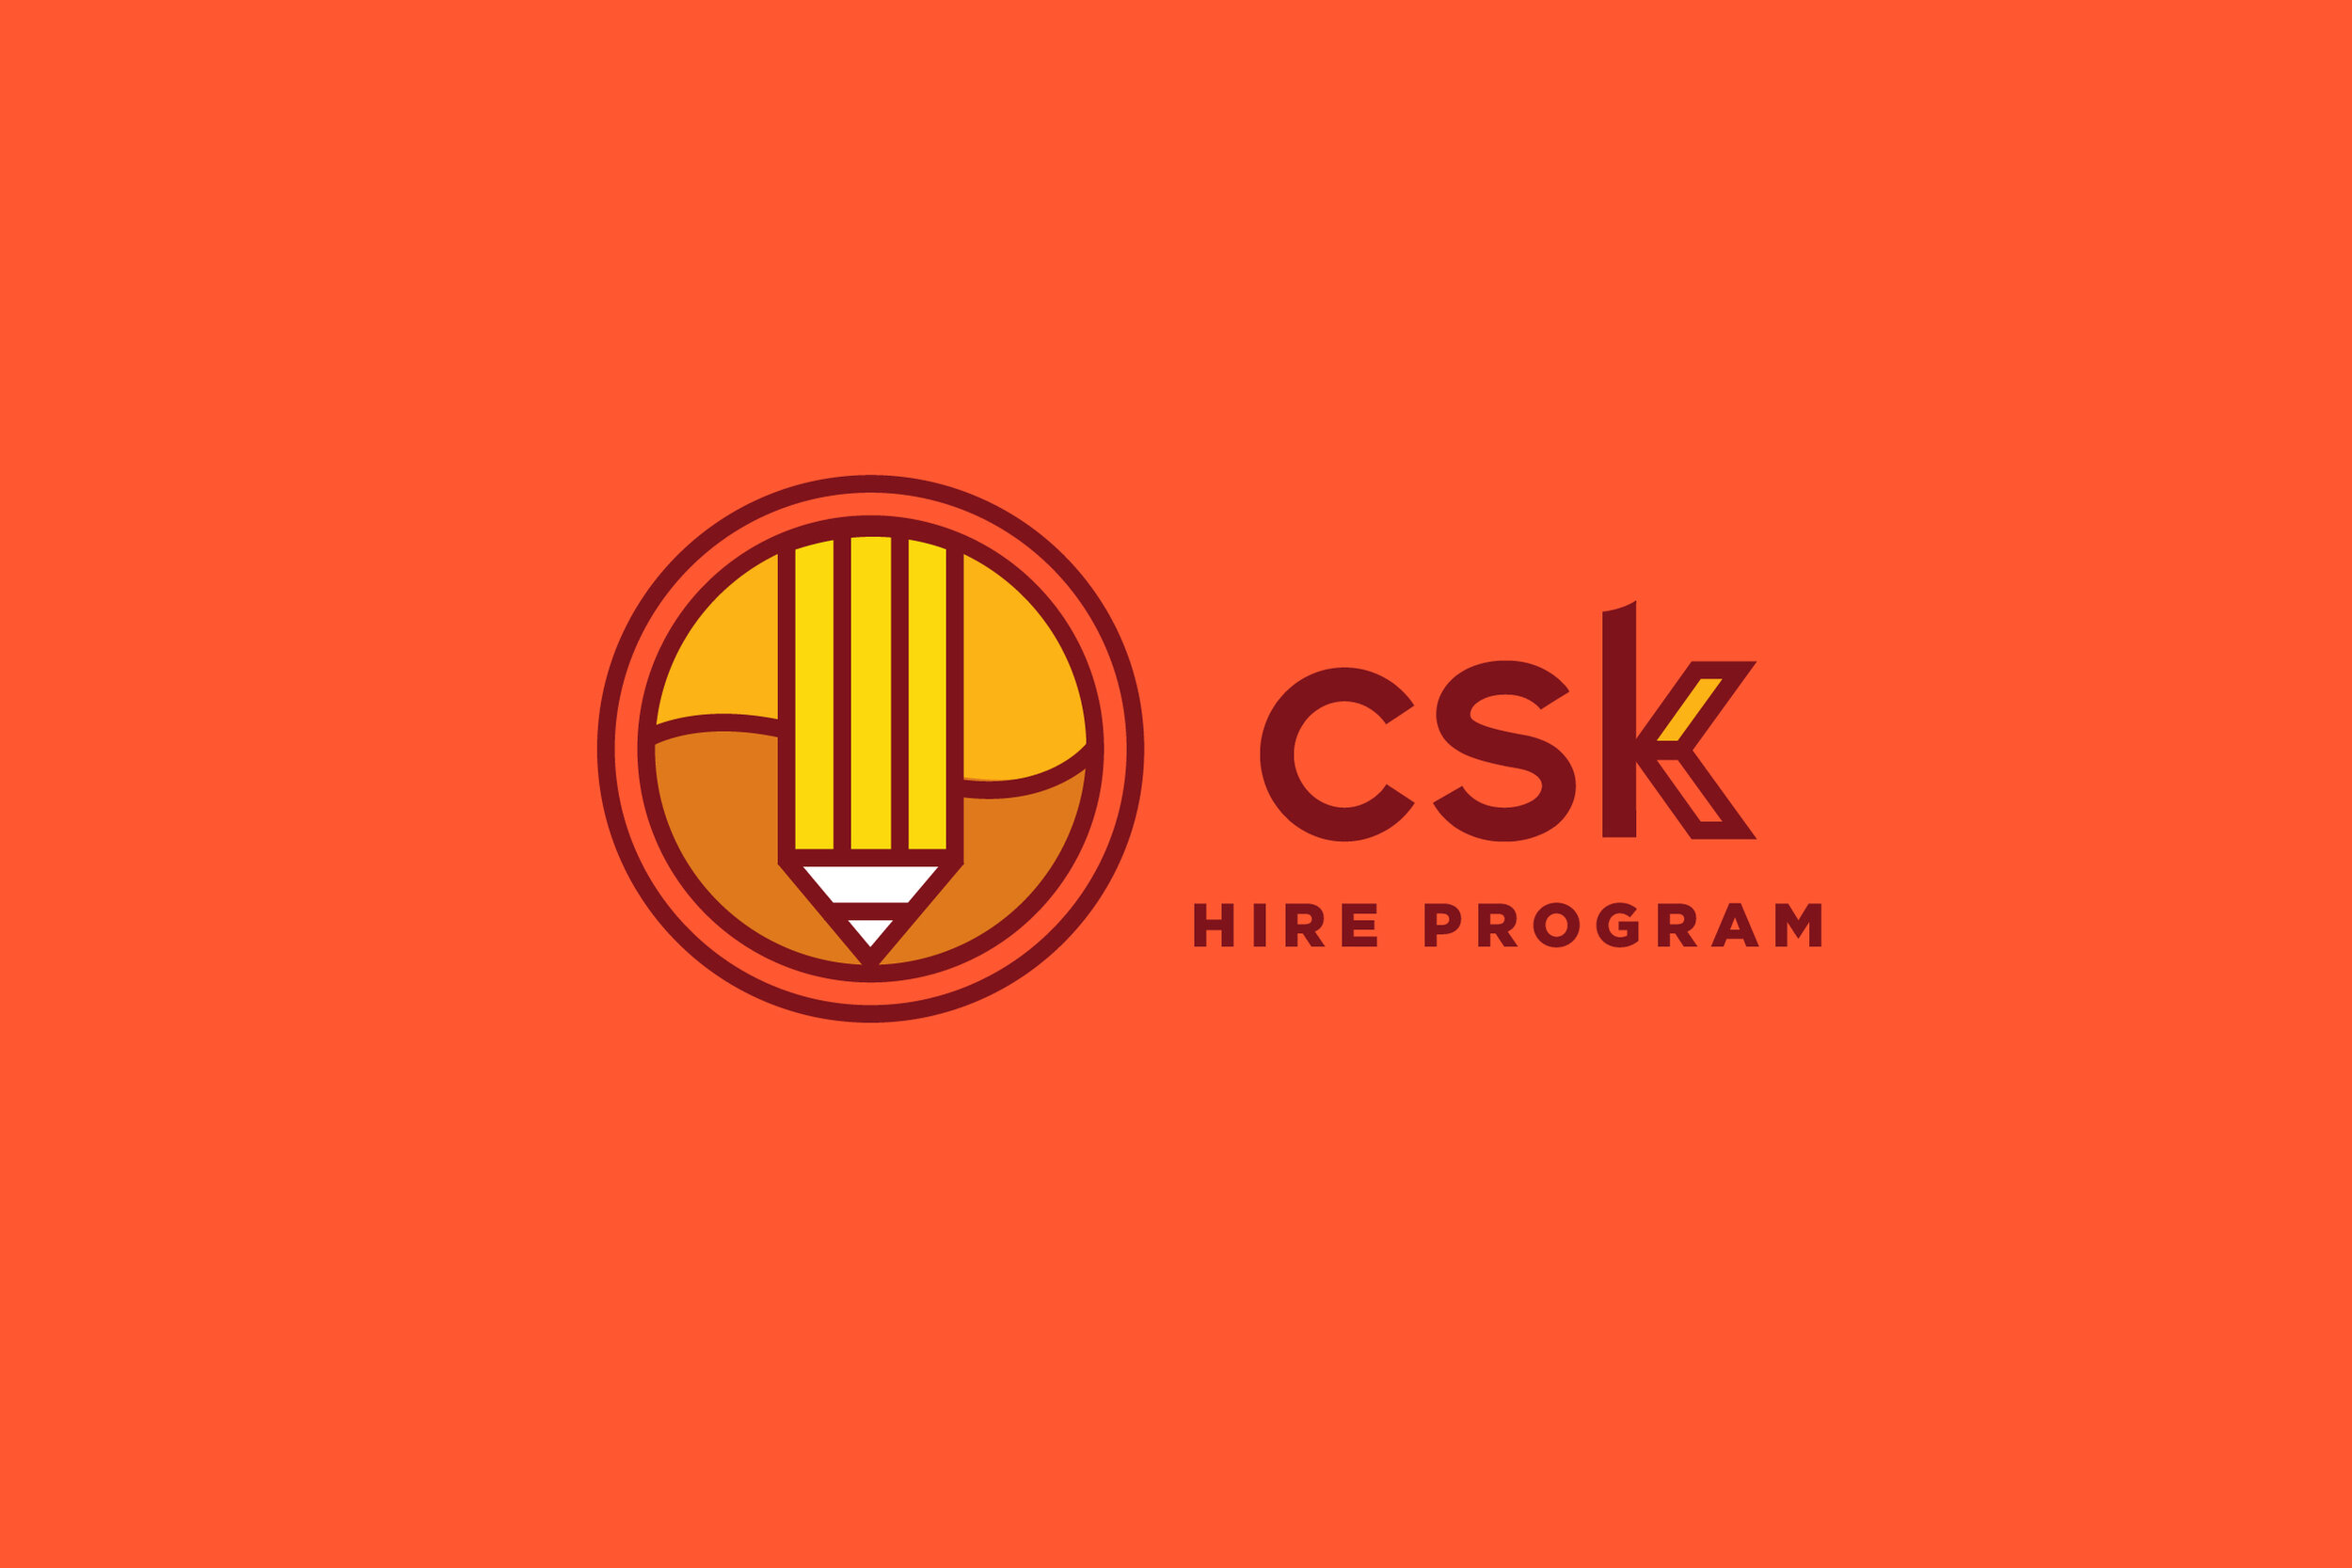 CSK-Outreach-Website-Images_Hire-Program.jpg